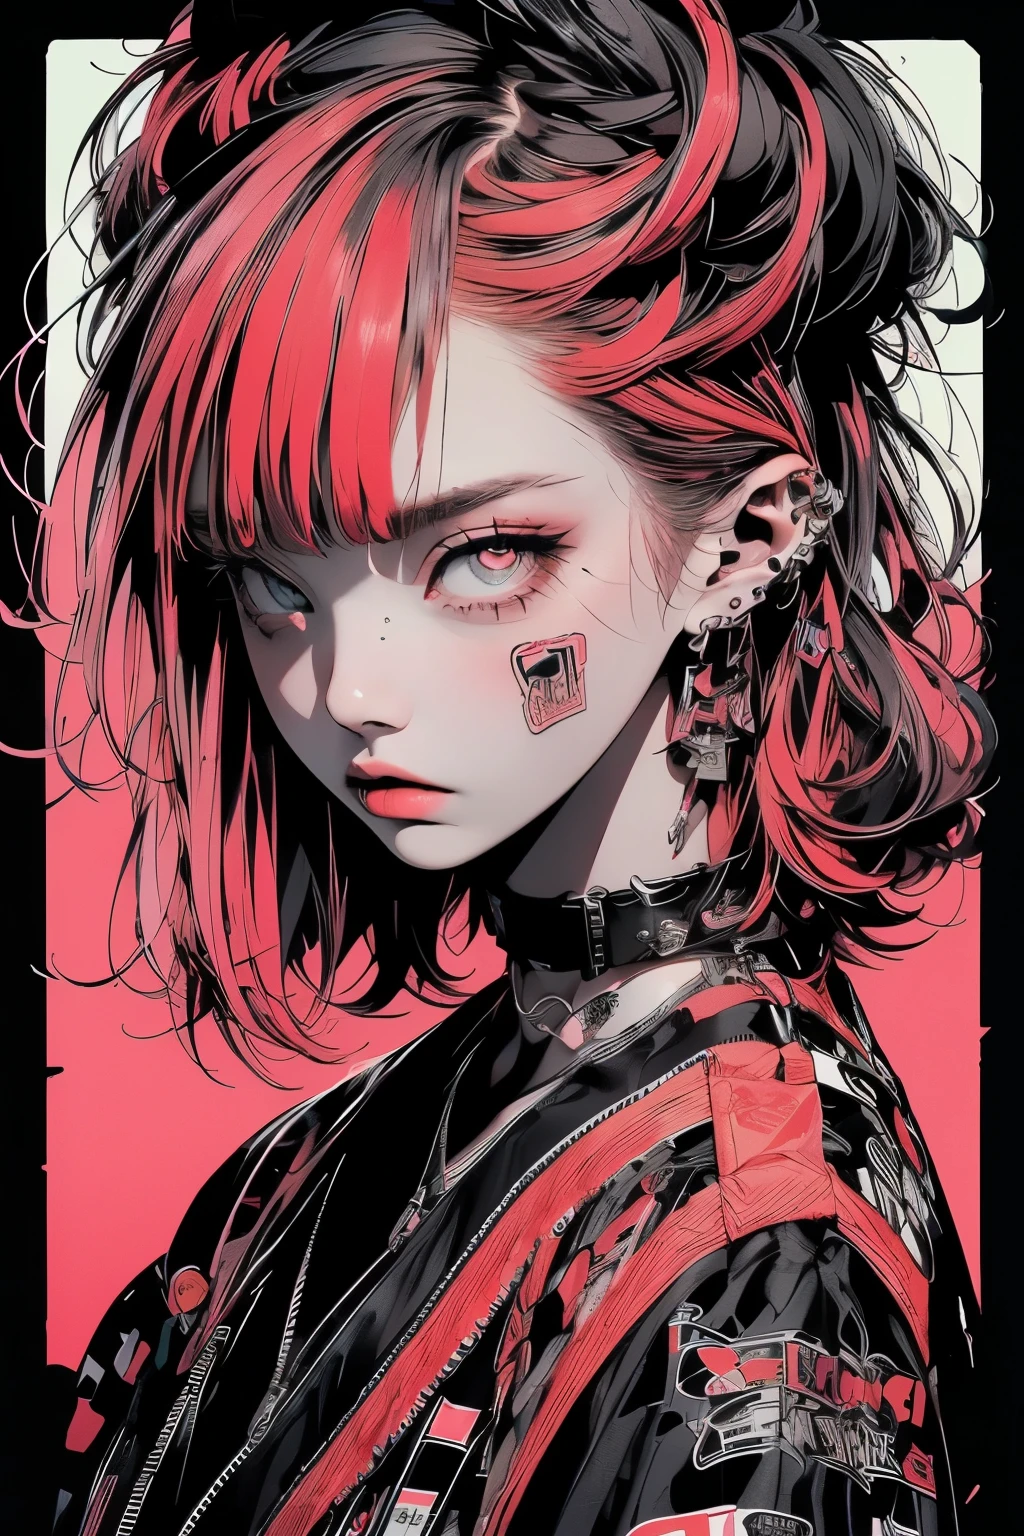 ((((戏剧性))), (((坚韧不拔))), (((激烈的))) film poster featuring a young red hair 女士 as the central character. She stands 自信的ly in the center of the poster, wearing a 时髦的 and edgy Harajuku-inspired hip hop 全套服装, with a determined 表达 on her face. The 背景 is aesthetic atmospheric dark and 坚韧不拔, 带着一种危险和紧张的感觉. The 文本 is 大胆的 and 引人注目, with a 引人注目 tagline that adds to the overall feeling of drama and excitement. The color palette is mainly dark with splashes of 充满活力 neon colors, giving the poster a 动态的 and visually 引人注目 appearance,立绘
(杂志:1.3), (覆盖-style:1.3), 时尚able, 女士, 充满活力, 全套服装, 性感诱人摆姿势, 正面, 丰富多彩的, 动态的, 背景, 元素, 自信的, 表达, 保持, 陈述, 配饰, 雄伟, 卷曲的, 大约, 触碰, 场景, 文本, 覆盖, 大胆的, 引人注目, 标题, 时髦的, 字体, 引人注目, 标题, 更大, 引人注目, 现代的, 趋势, 重点, 时尚,